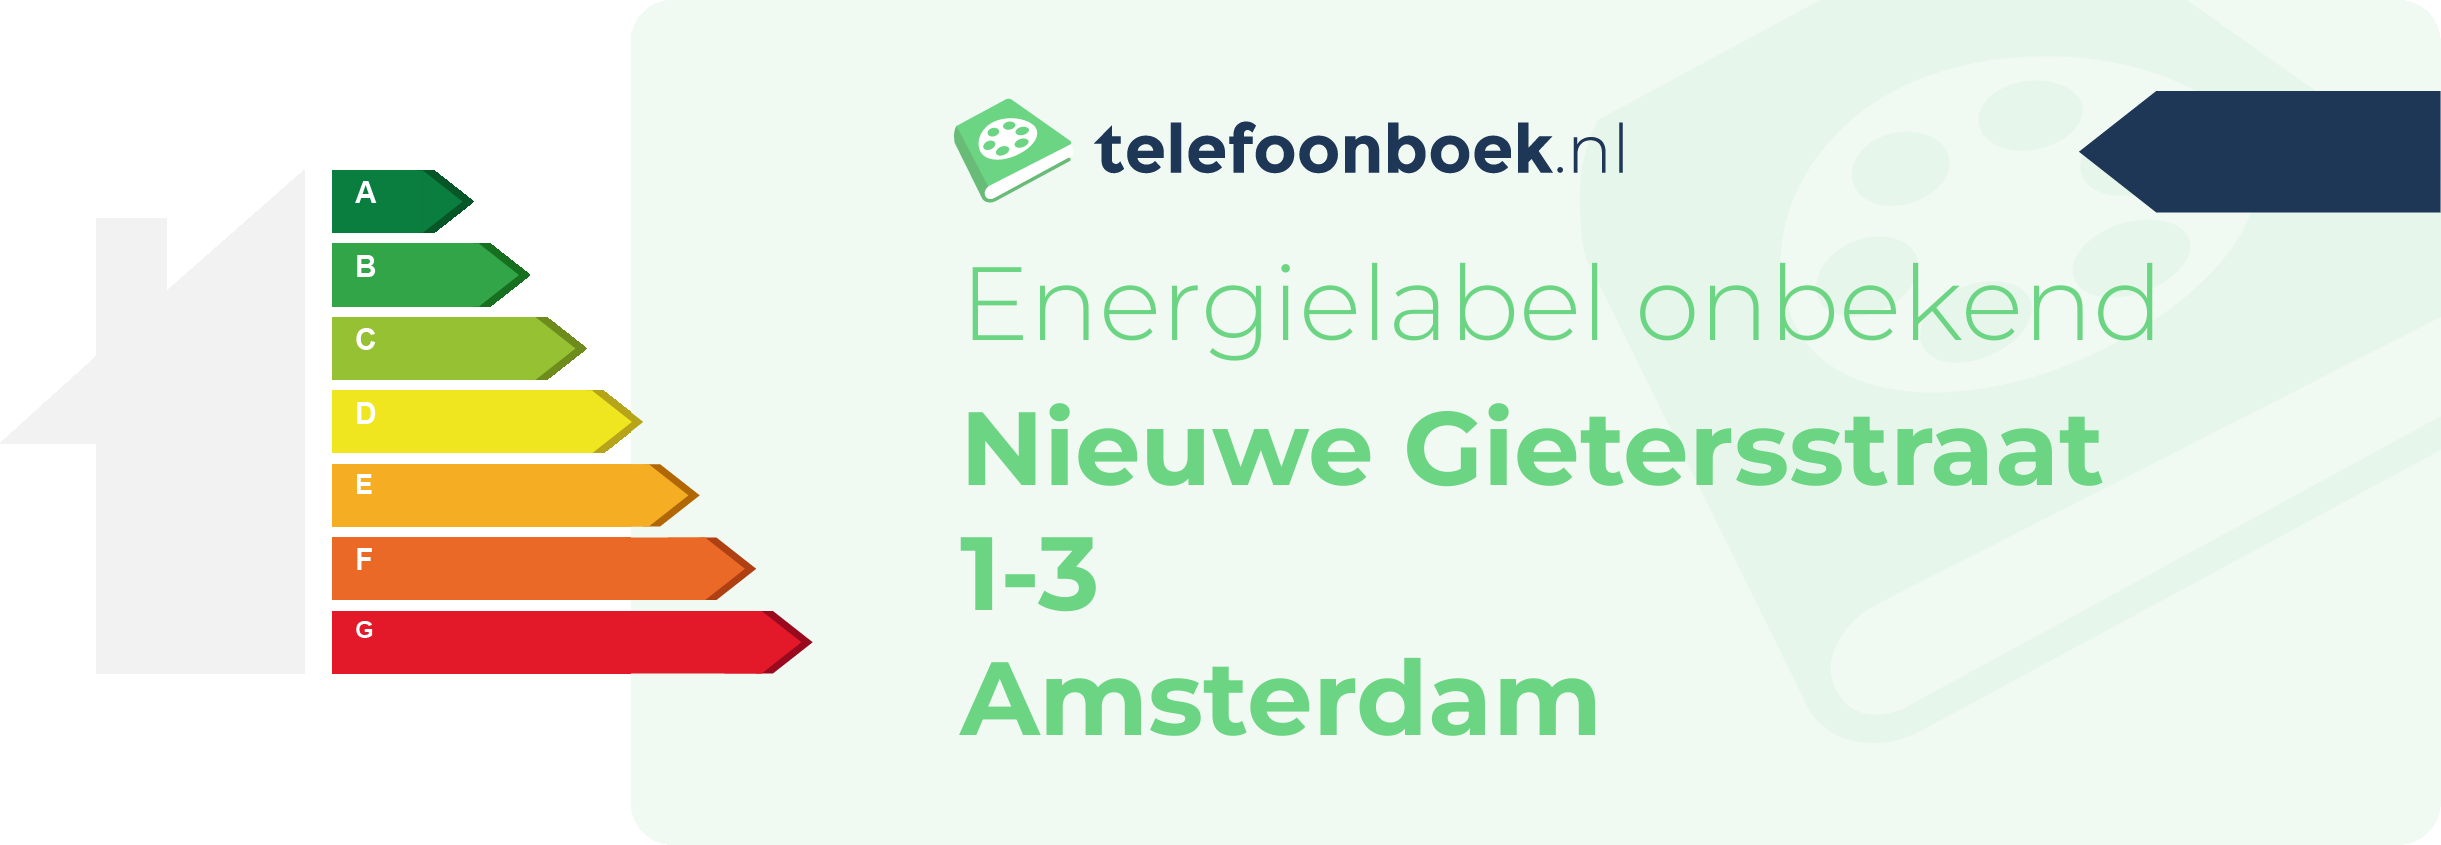 Energielabel Nieuwe Gietersstraat 1-3 Amsterdam